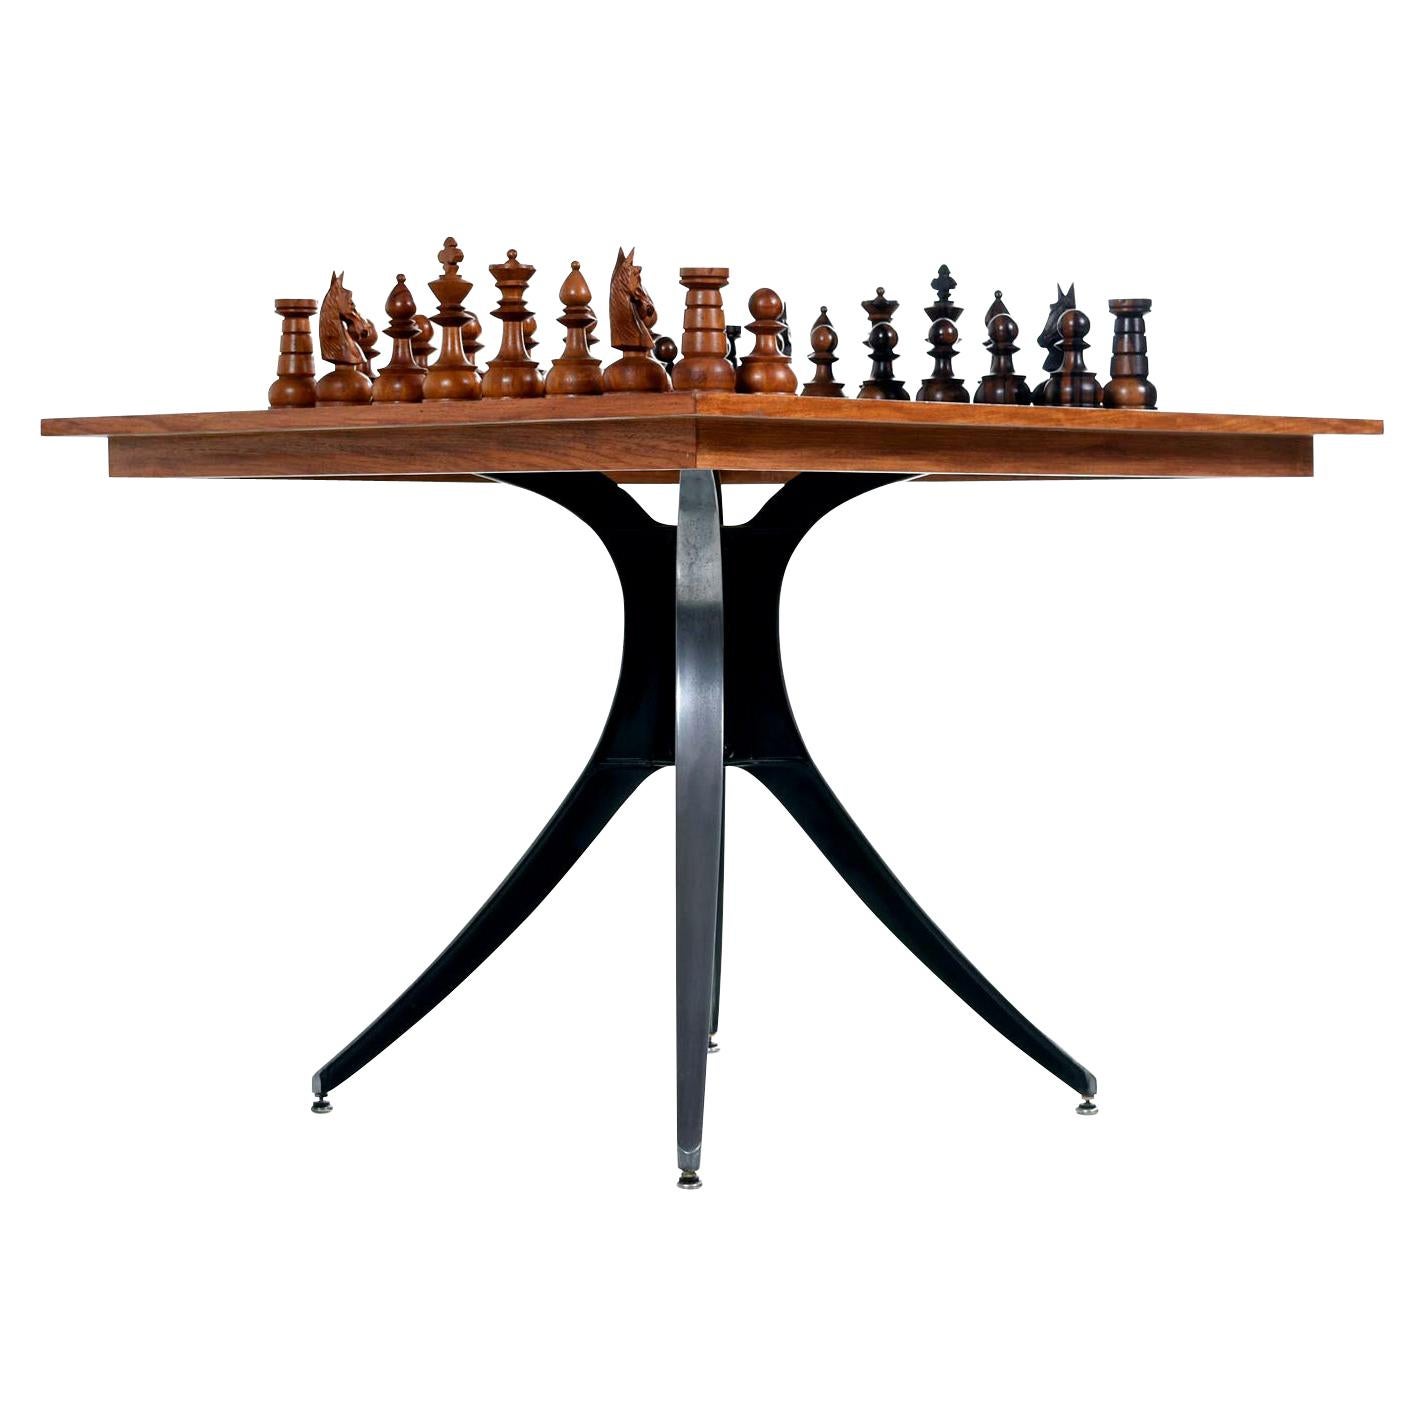 Macassar Ebony and Teak Exotic Hardwood Chess Set Table Set